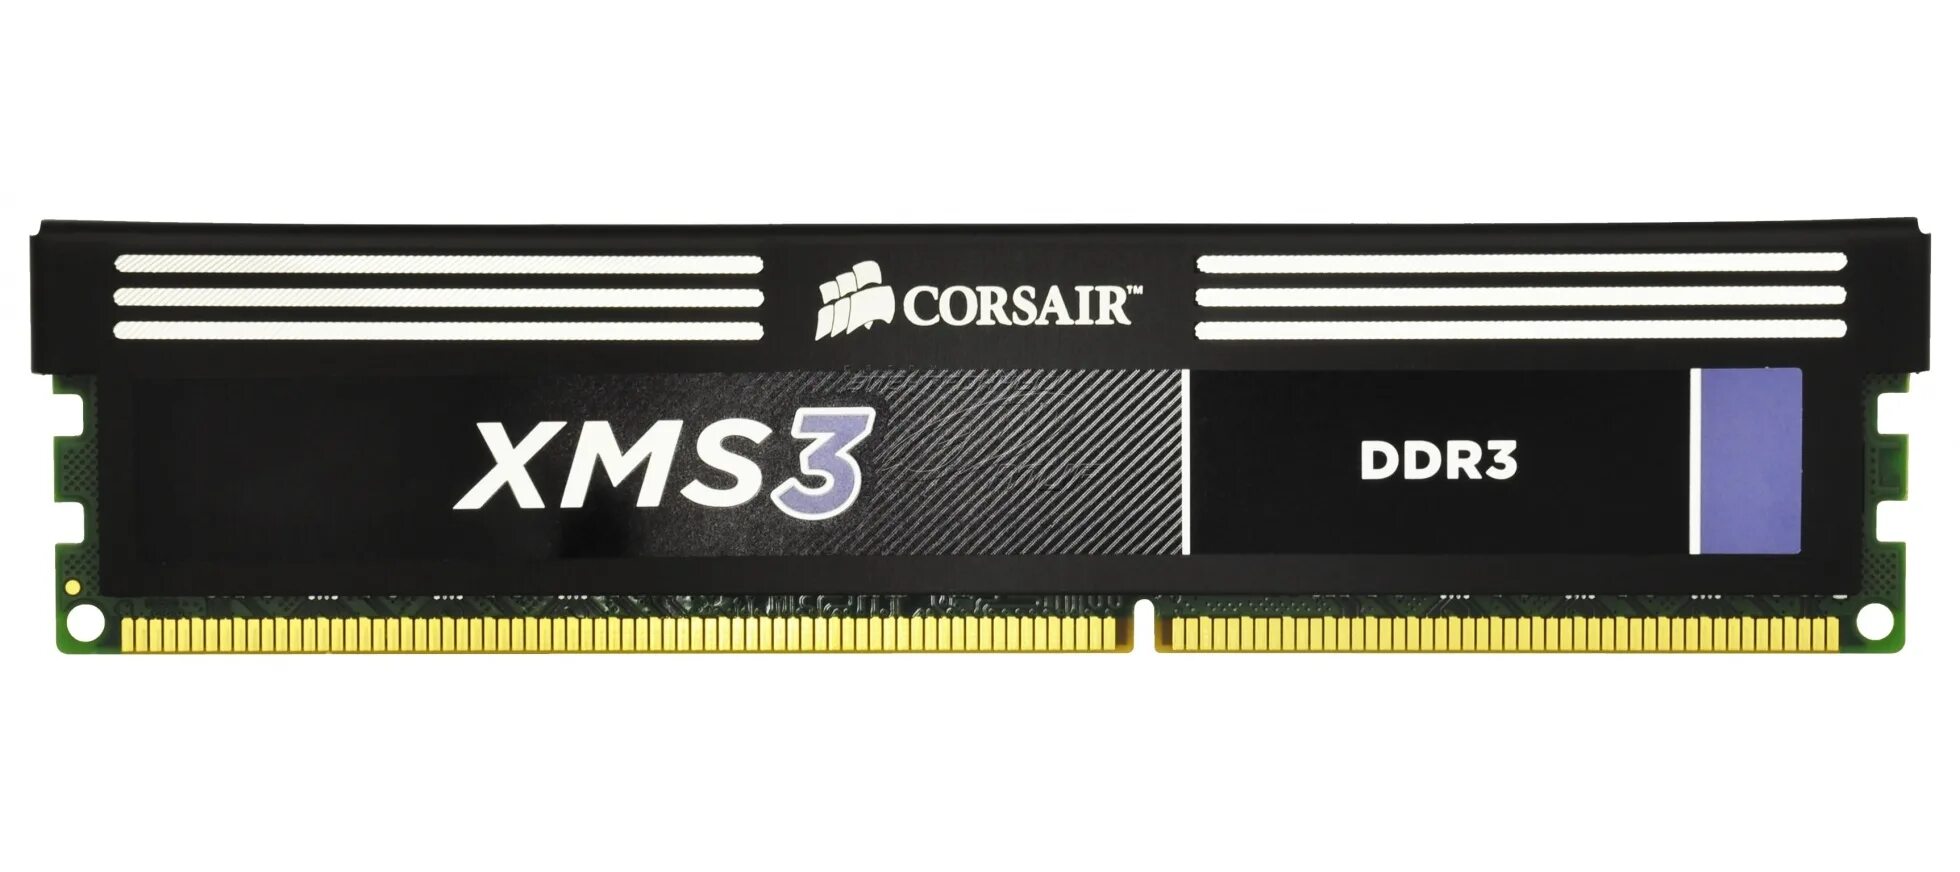 Corsair XMS 8 ГБ ddr3 1600 МГЦ DIMM cl11 cmx8gx3m1a1600c11. Оперативная память Corsair 1600 8 ГБ ddr3 DIMM xms3. Corsair XMS 4 ГБ ddr3 1600 МГЦ DIMM cl9 cmx4gx3m1a1600c9. Оперативная память XMS 3 ddr3 4 GB. Частота памяти 1600